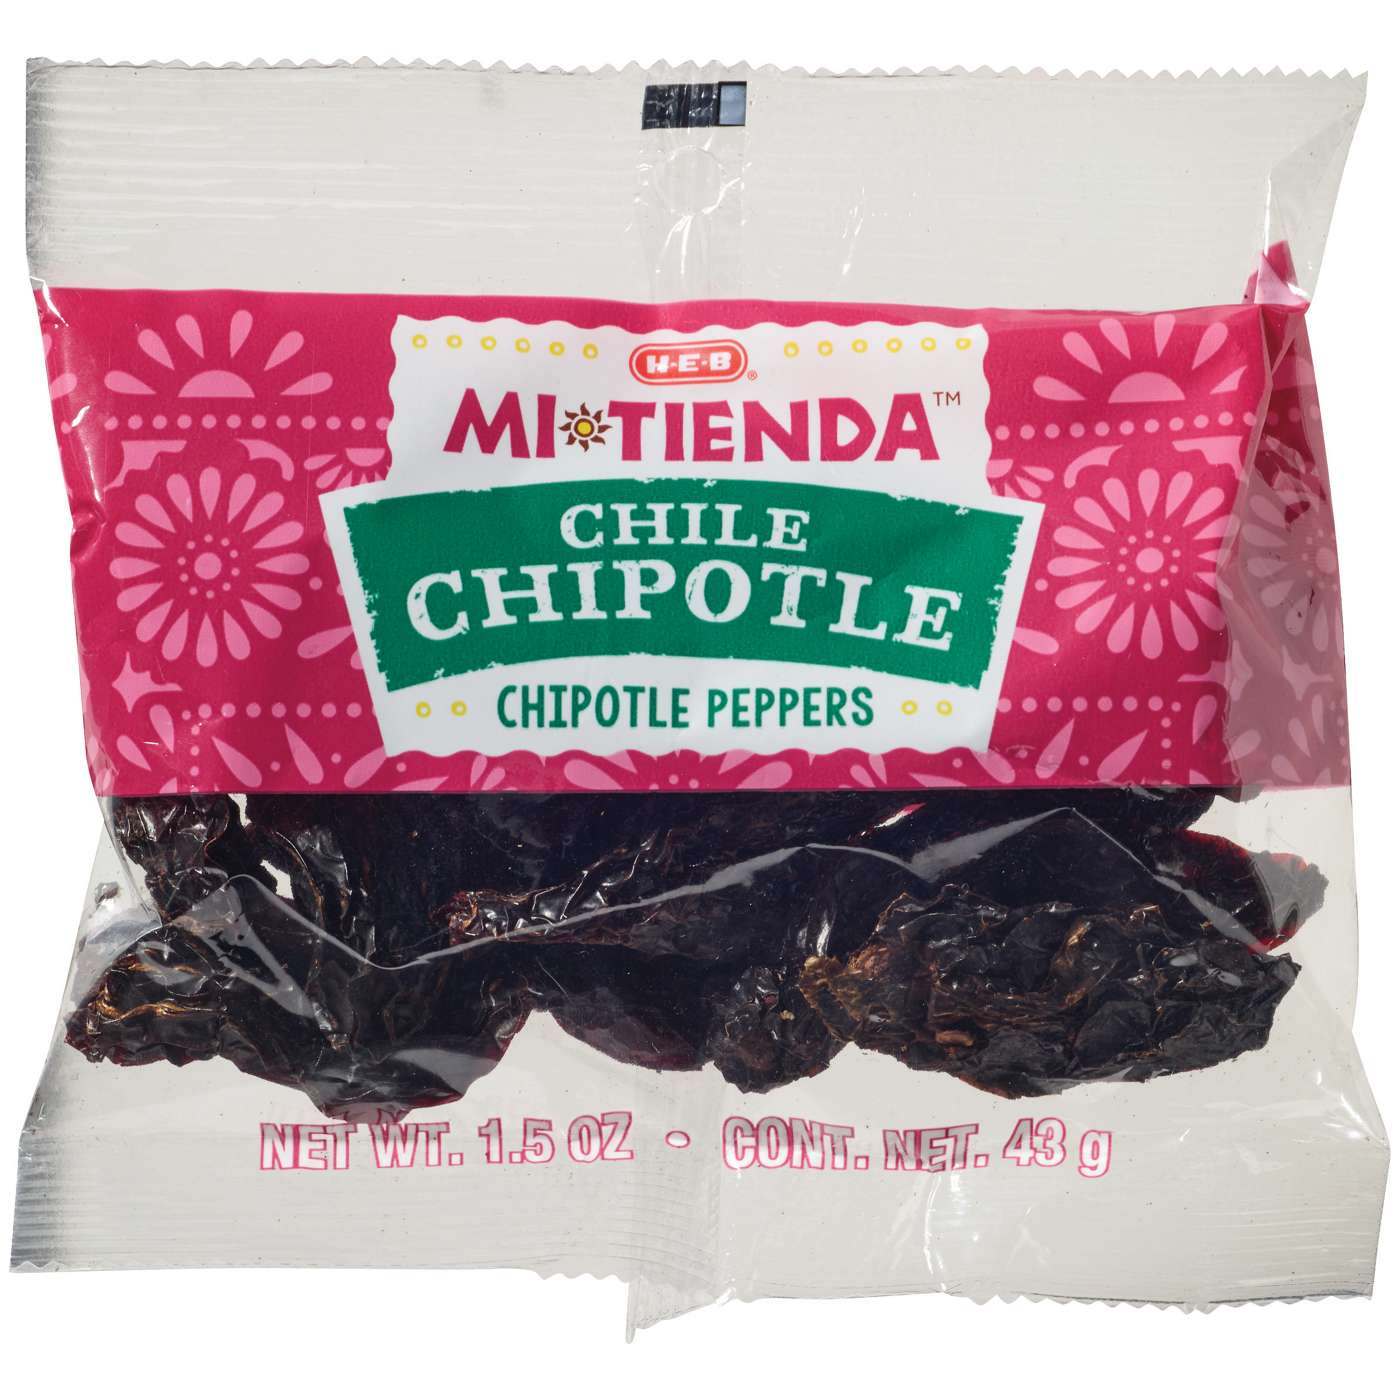 H-E-B Mi Tienda Dried Chile Chipotle Peppers; image 1 of 2